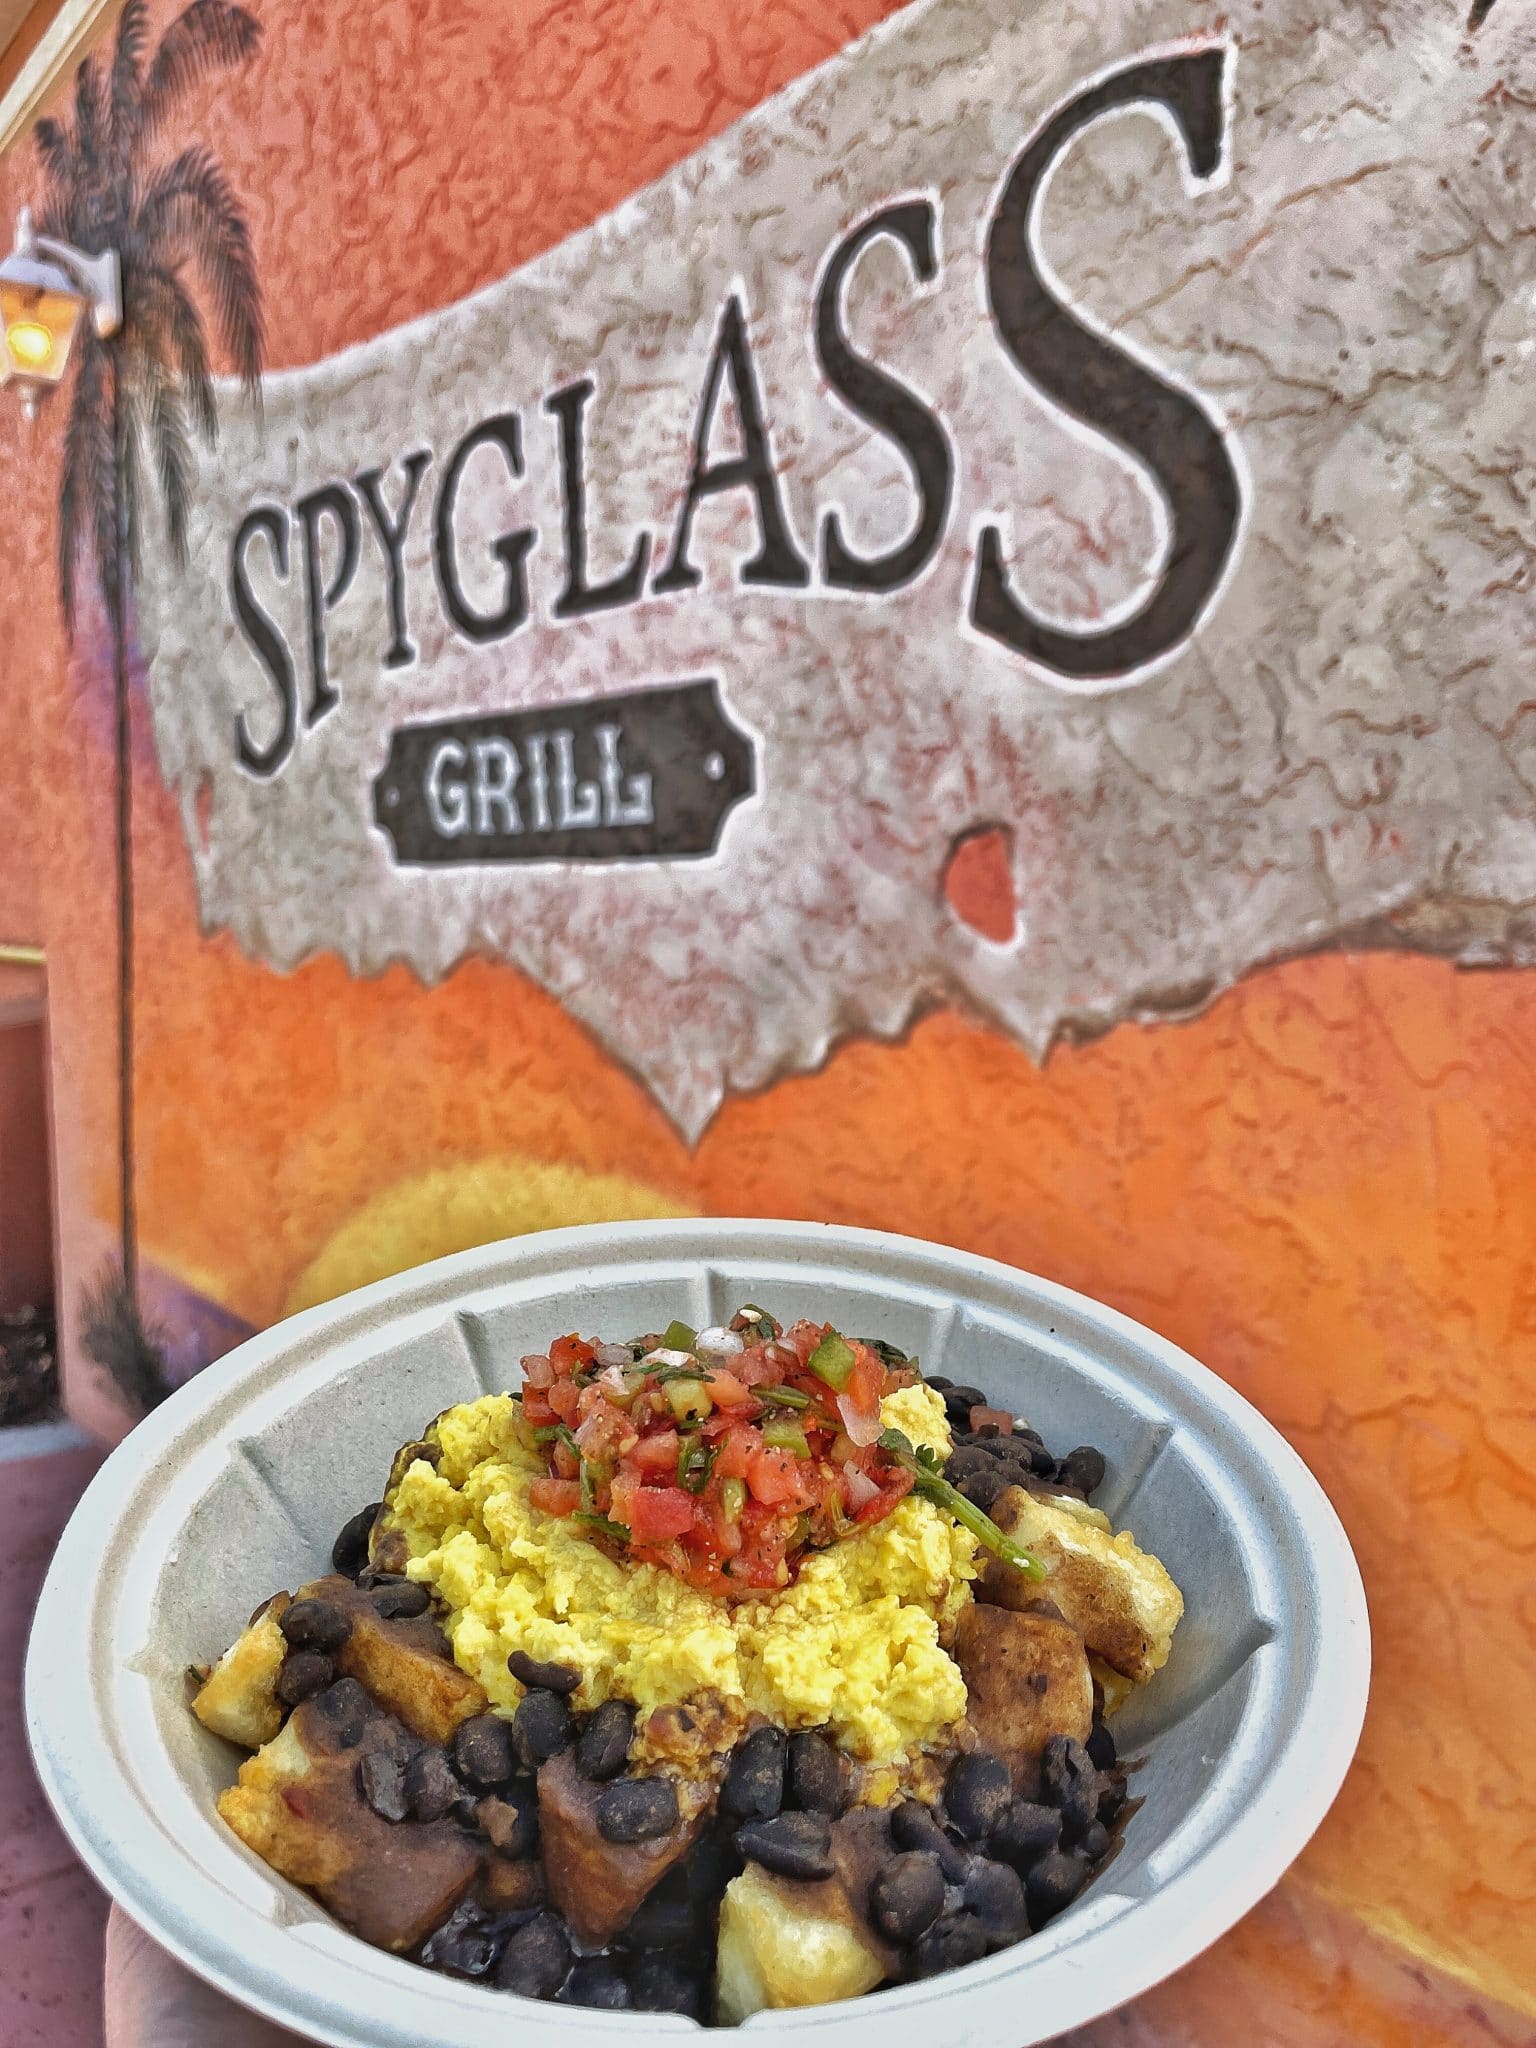 Spyglass Grill vegan breakfast bowl